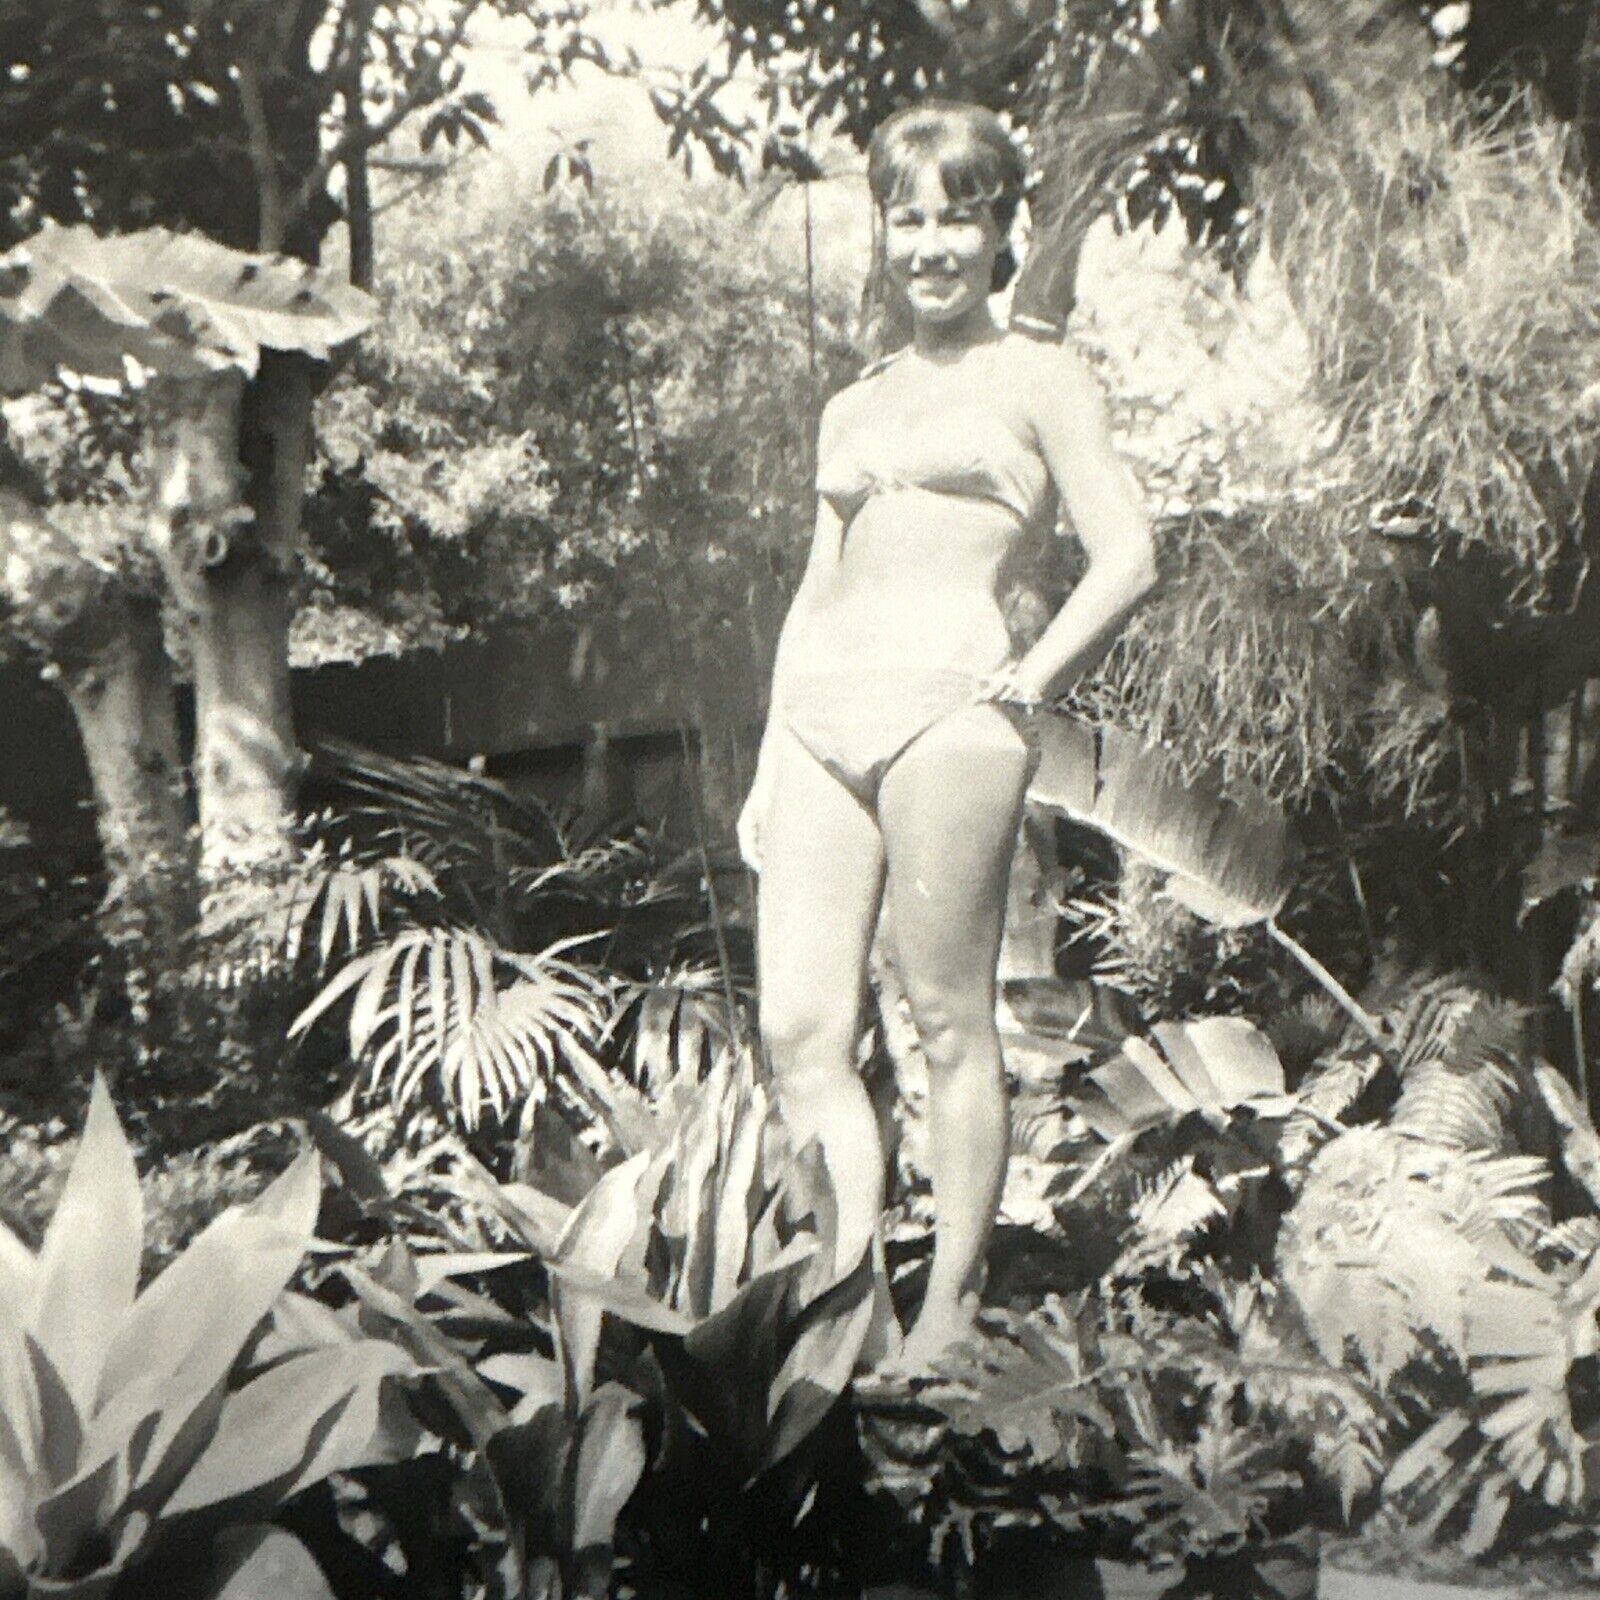 VINTAGE PHOTO 1963 unbelievably Gorgeous, sexy woman bikini ORIGINAL SNAPSHOT